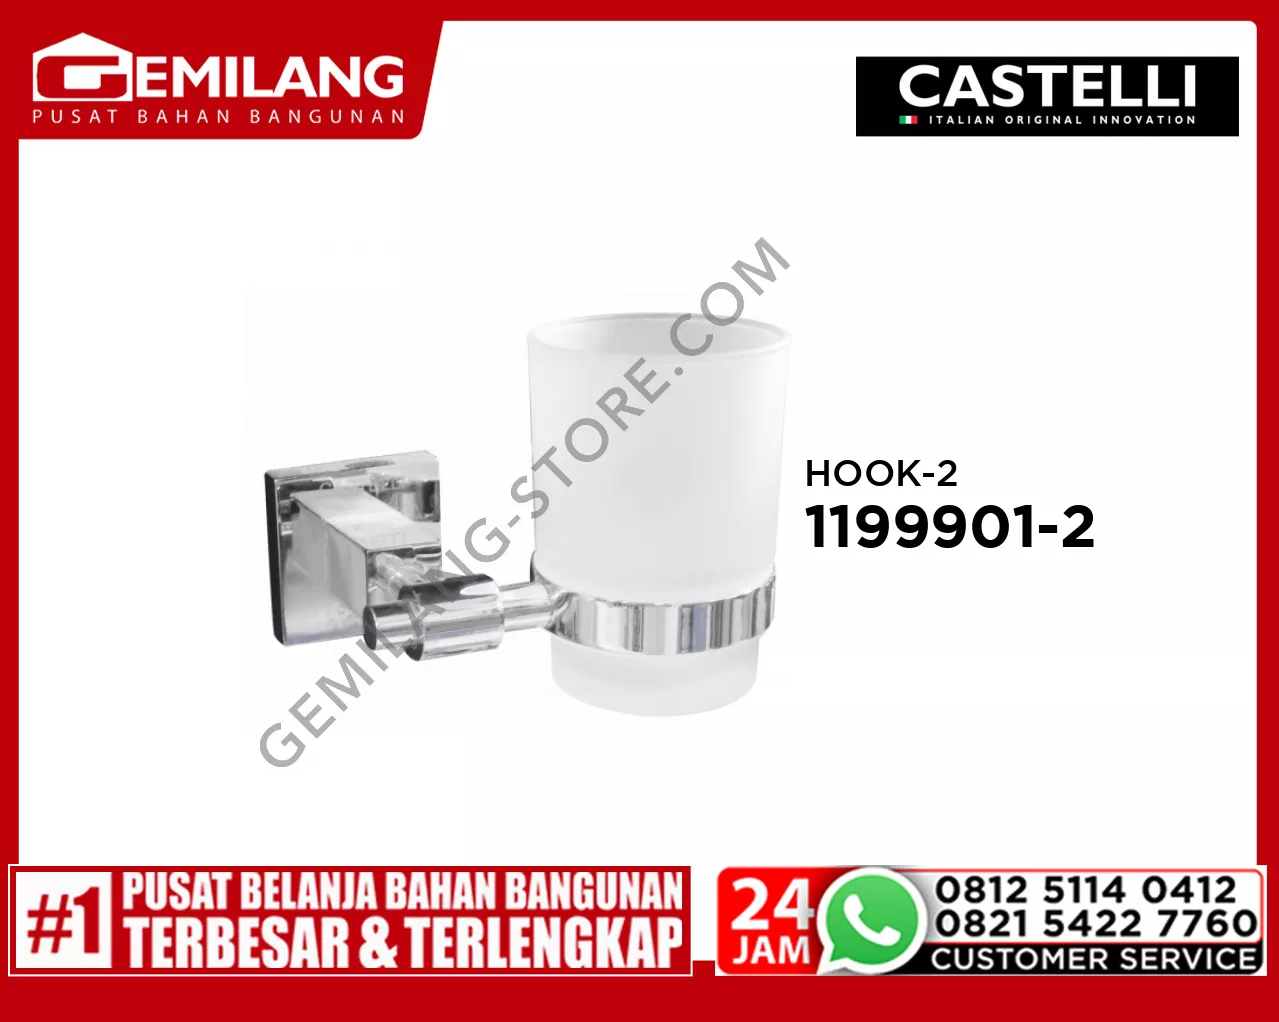 CASTELLI SINGLE TUMBLER HOLDER CHROME 1206753